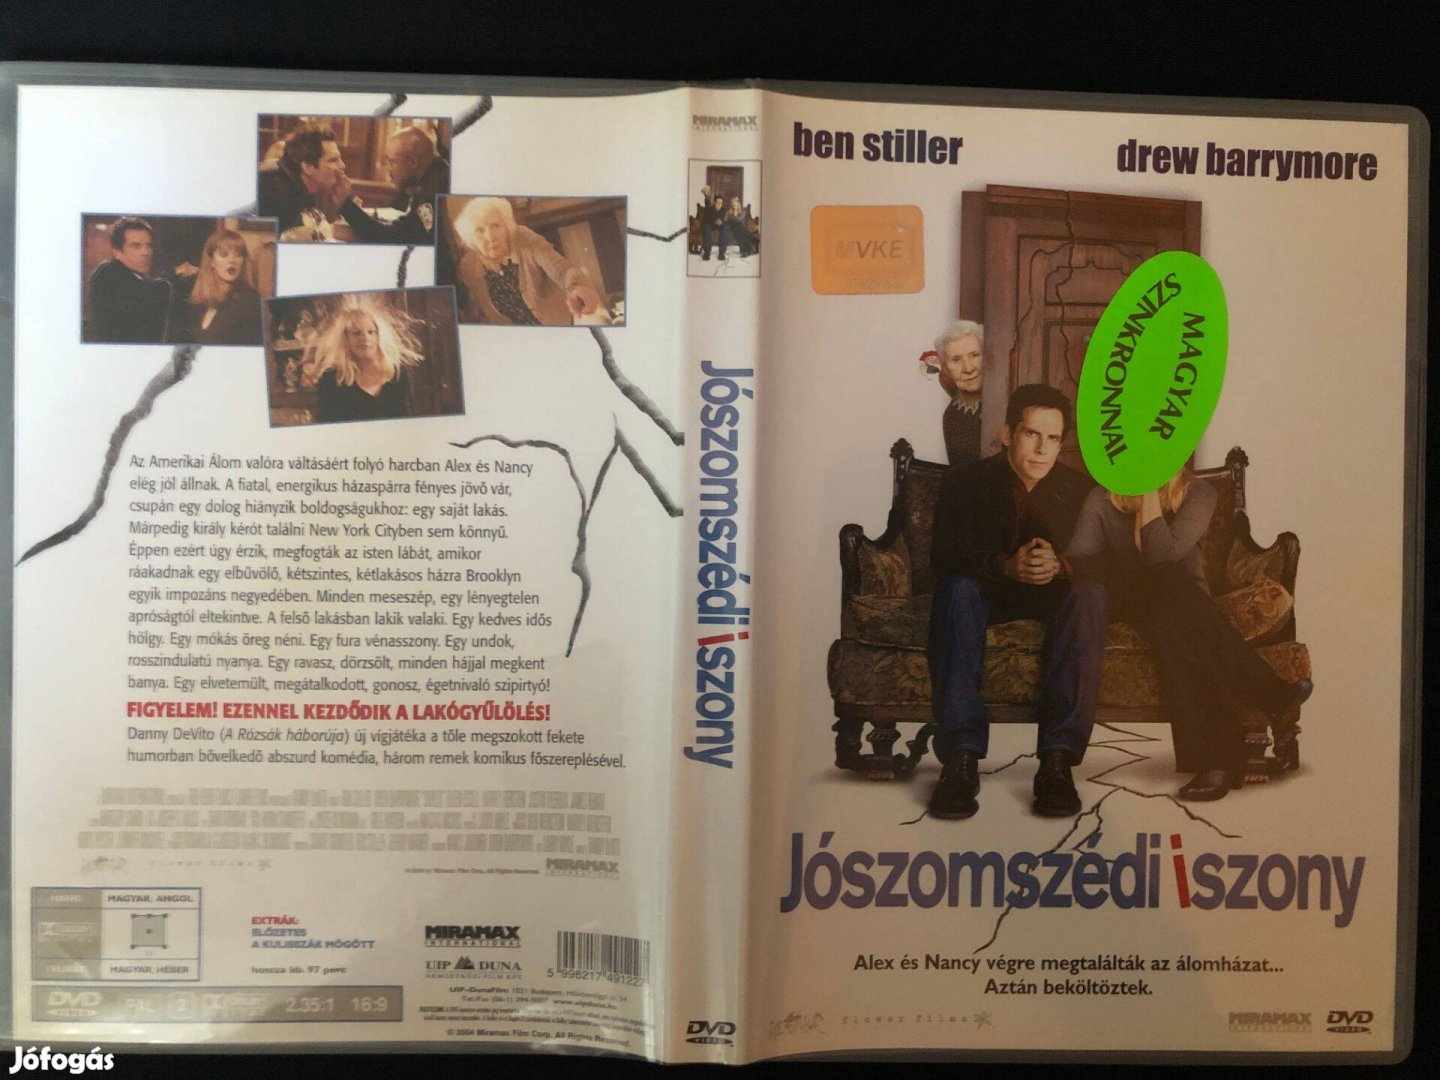 Jószomszédi iszony (karcmentes, Ben Stiller, Drew Barrymore) DVD